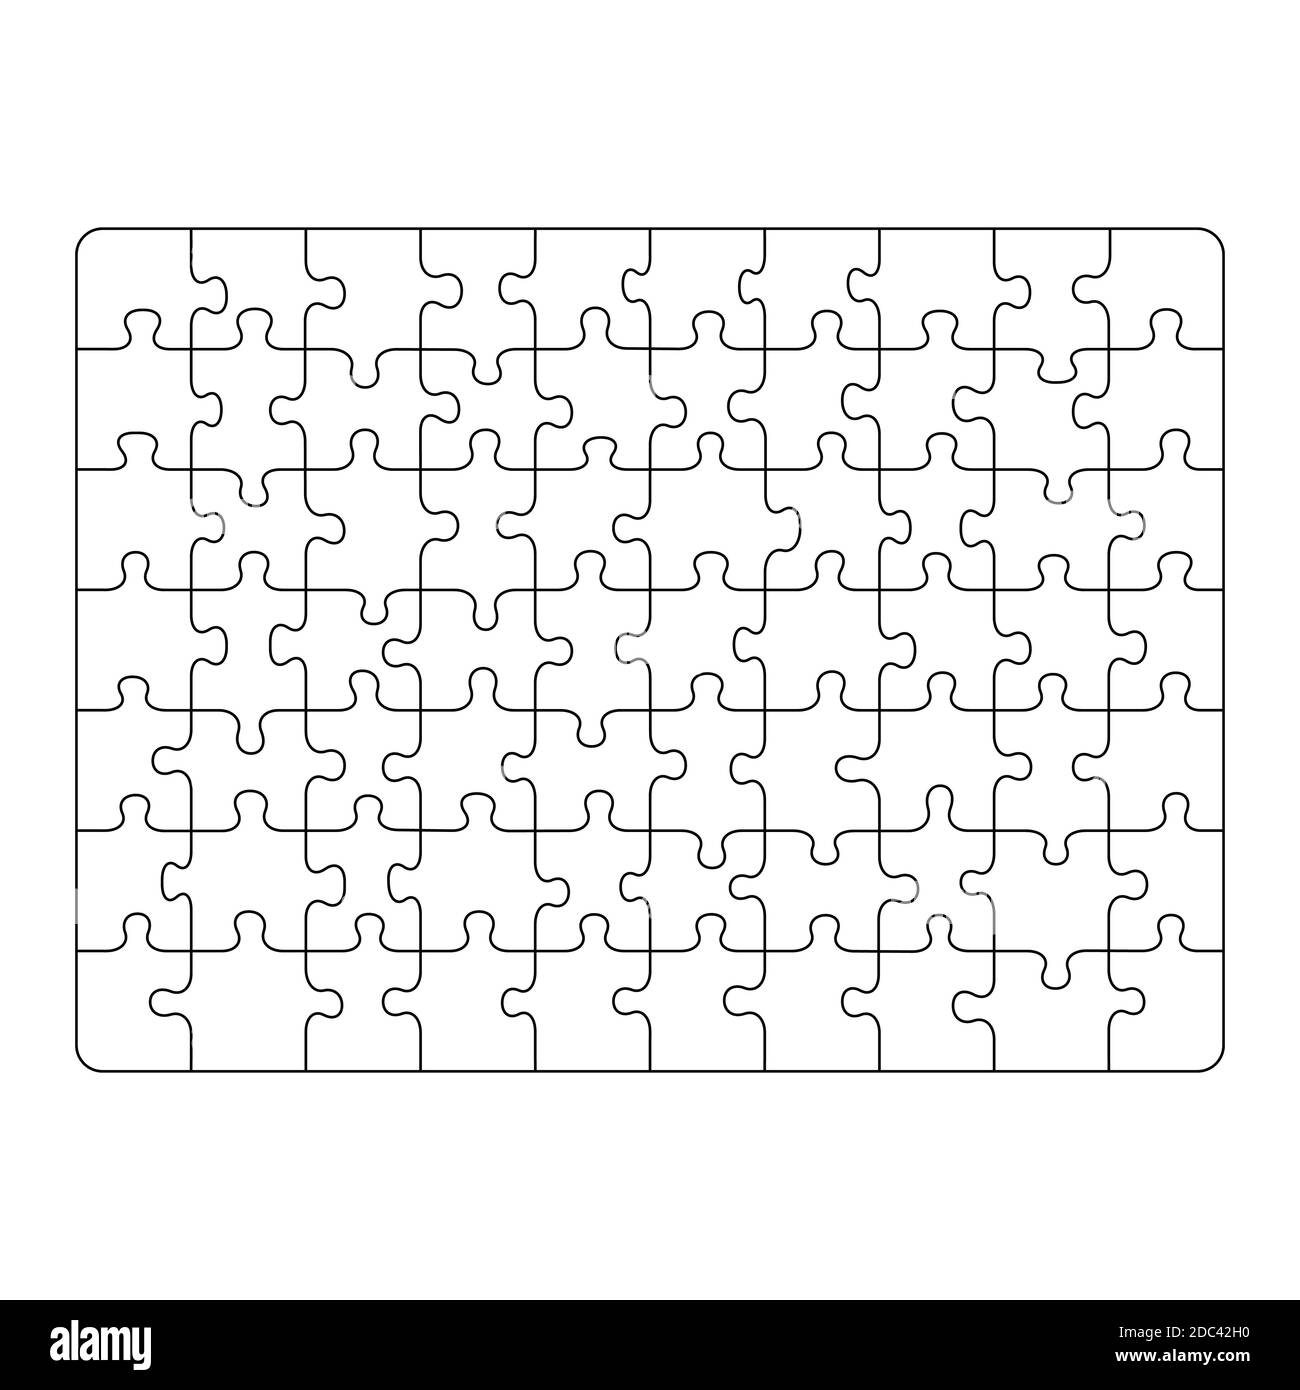 Skizzieren Puzzle-Muster, schwarze Linien auf weißem Hintergrund.  Vektorgrafik flach Stock-Vektorgrafik - Alamy